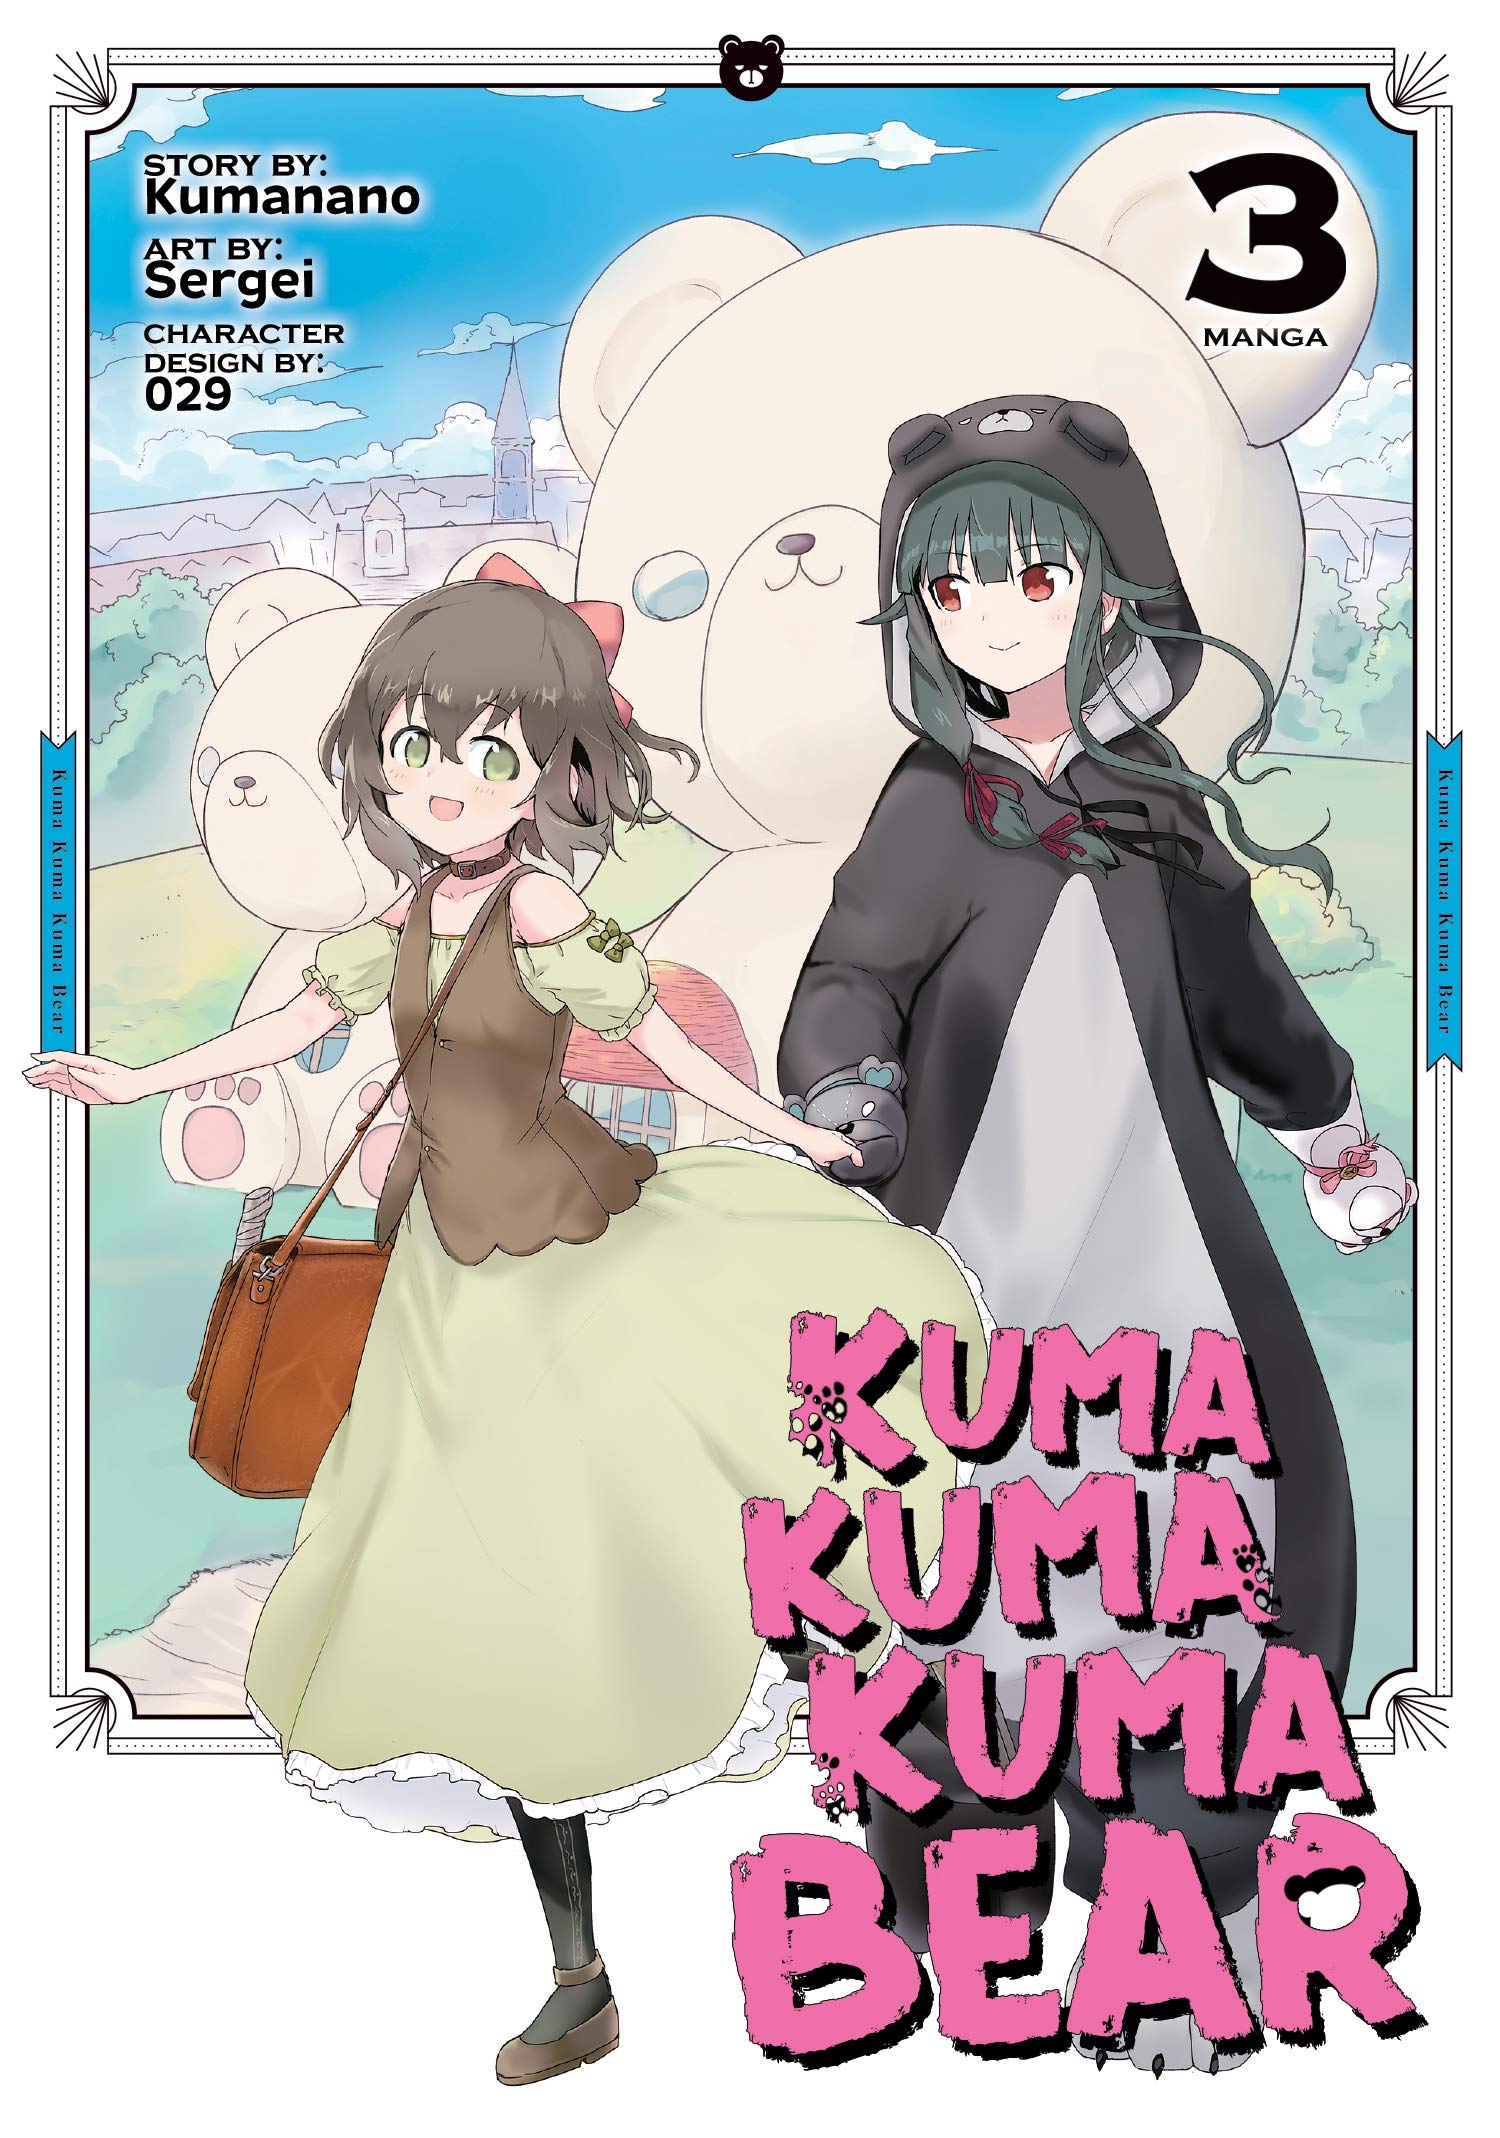 Kuma Kuma Kuma Bear (Manga) Vol. 3 (Kuma Kuma Kuma Bear (Manga), 3): Kumanano, Sergei: Books